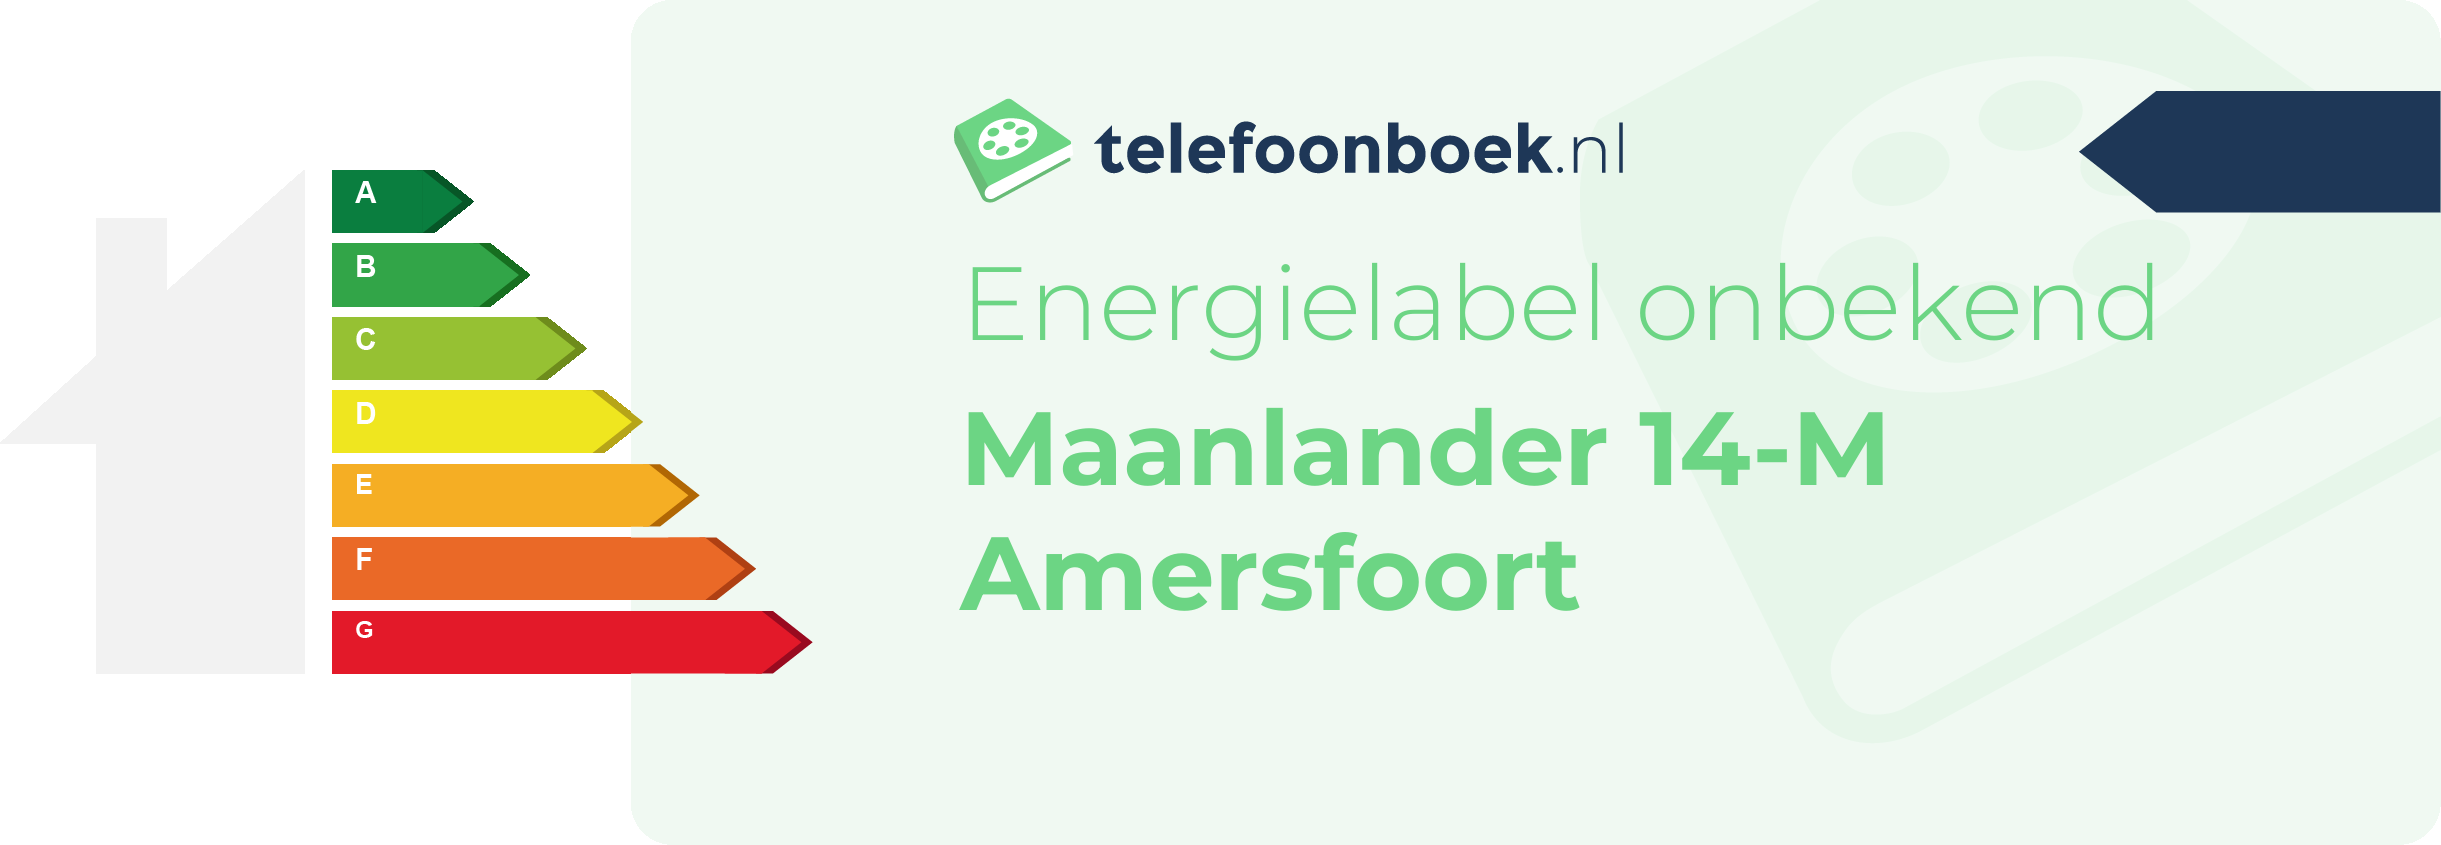 Energielabel Maanlander 14-M Amersfoort